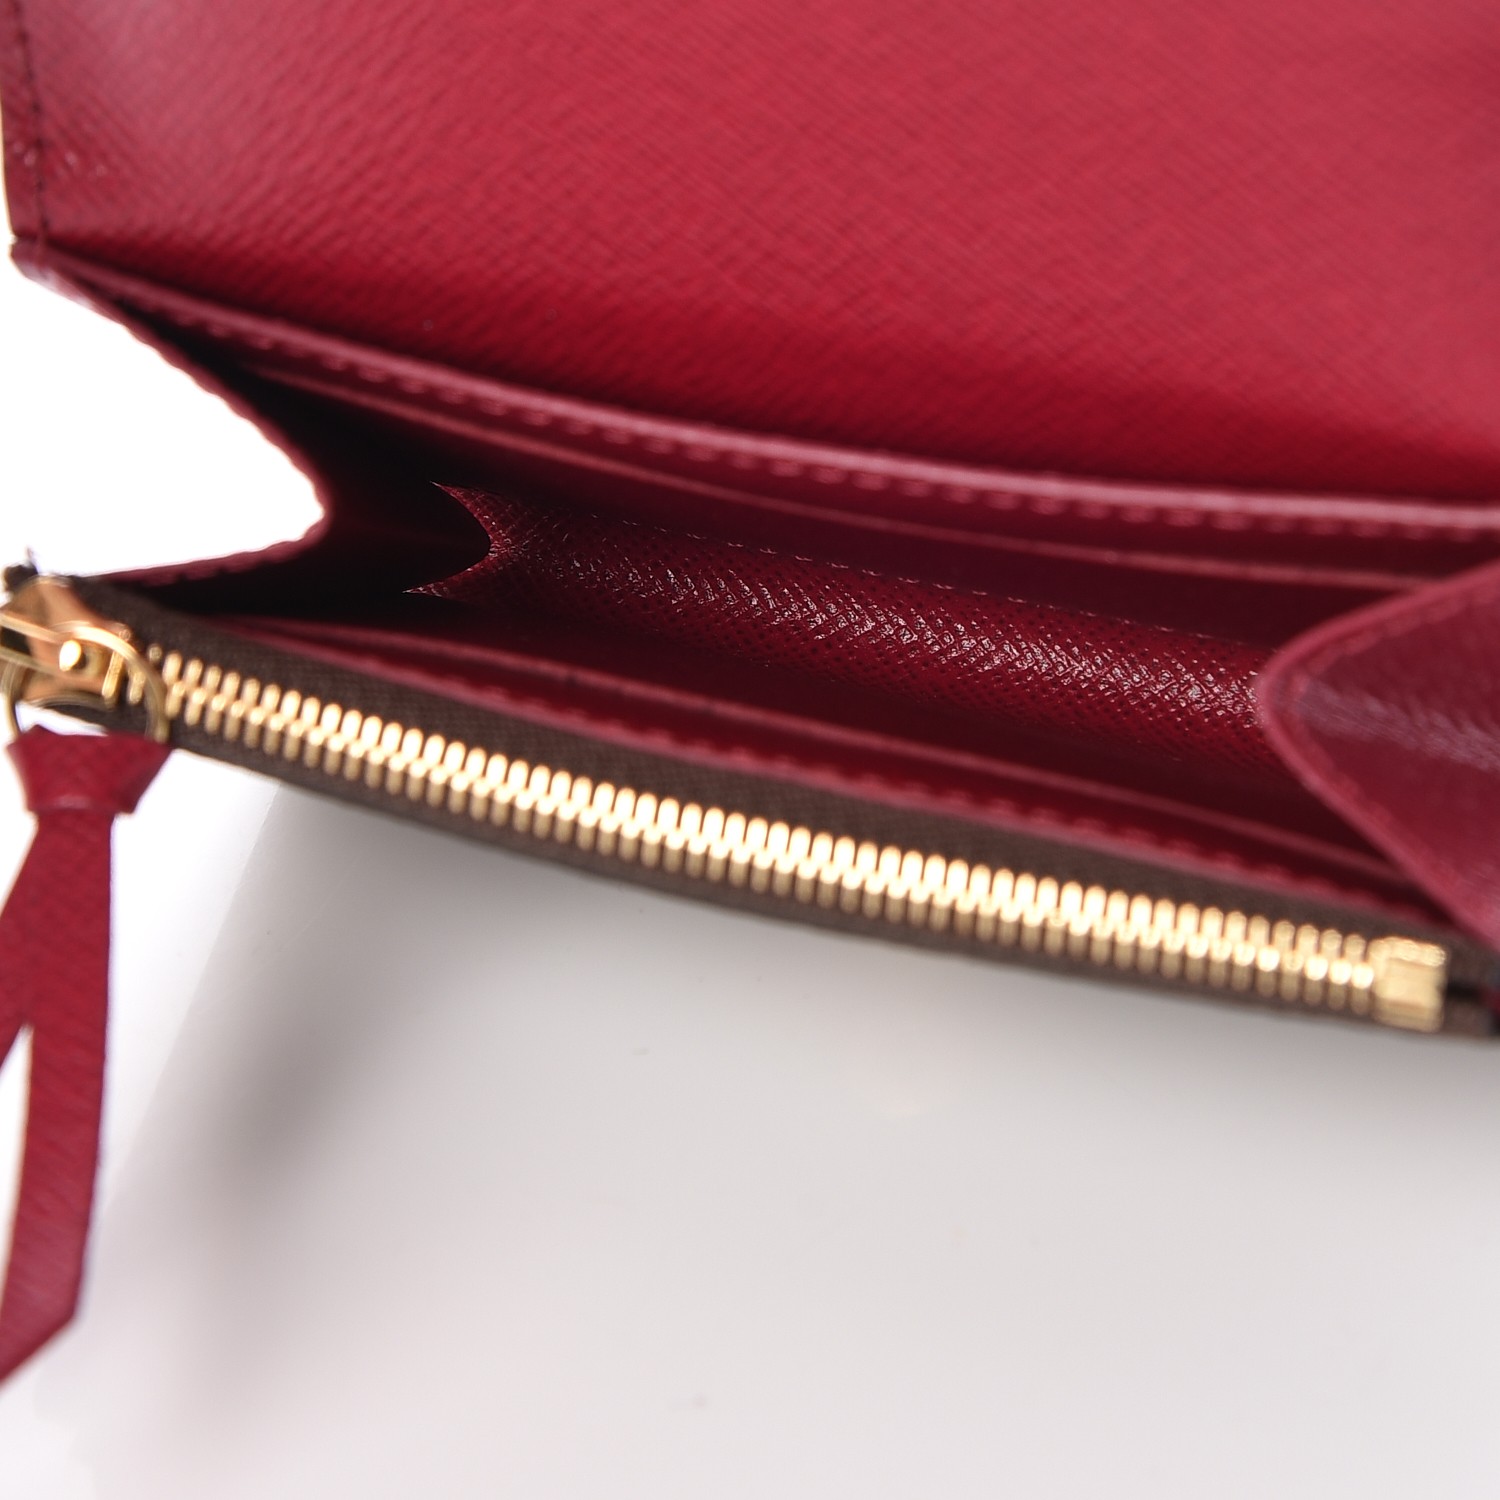 Louis Vuitton - Rosalie Coin Purse - Monogram Leather - Rose Poudre - Women - Luxury